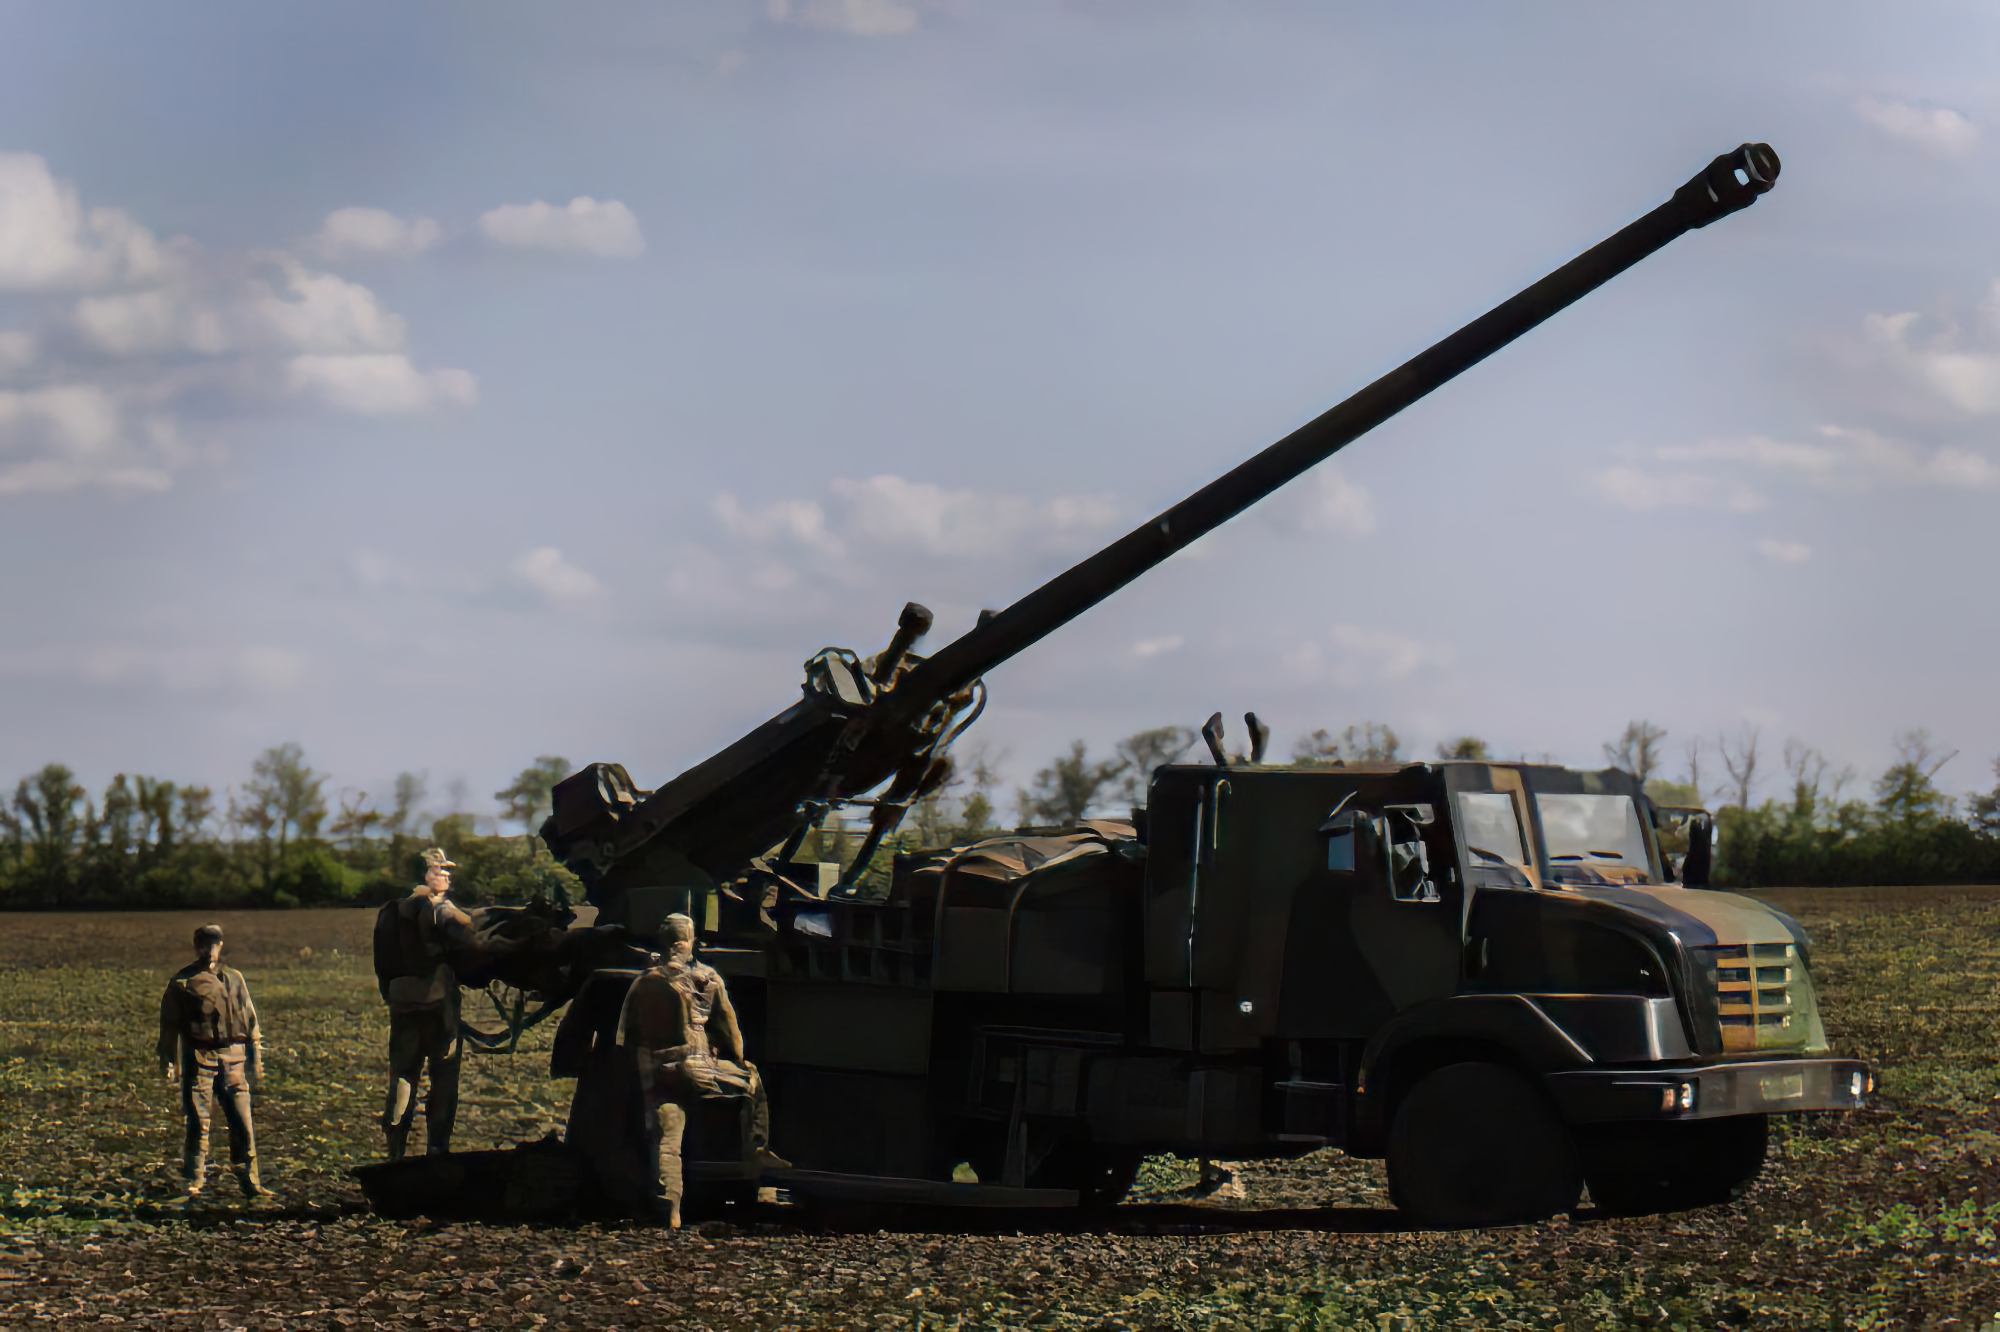 Le commandant en chef des forces armées ukrainiennes Valery Zaluzhny a montré des canons automoteurs français CAESAR